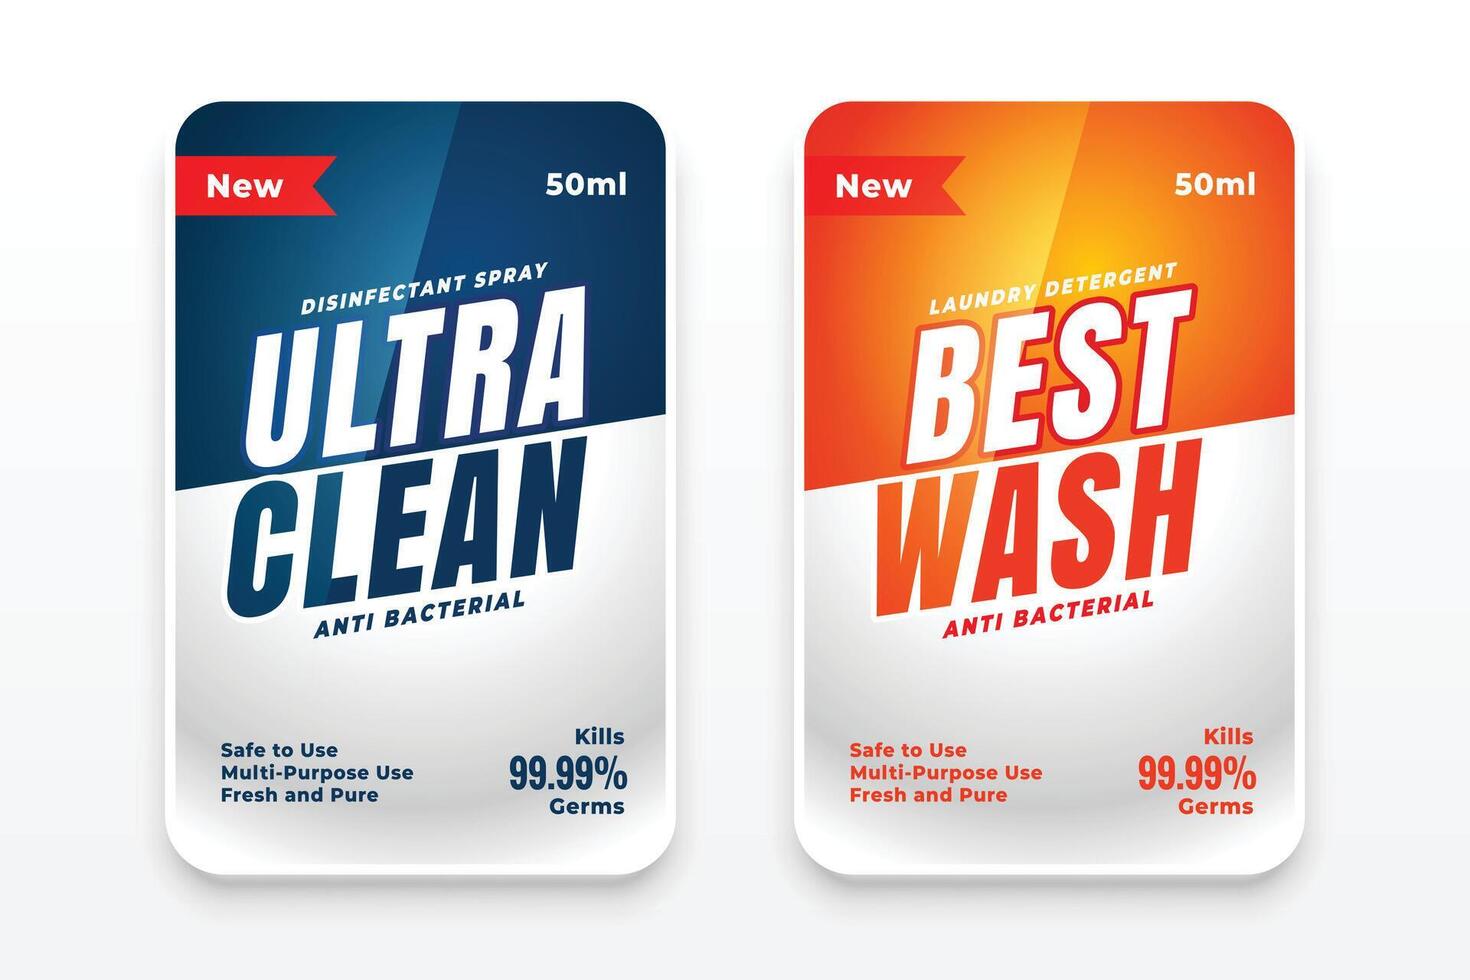 melhor limpar \ limpo detergente etiquetas conjunto do dois vetor